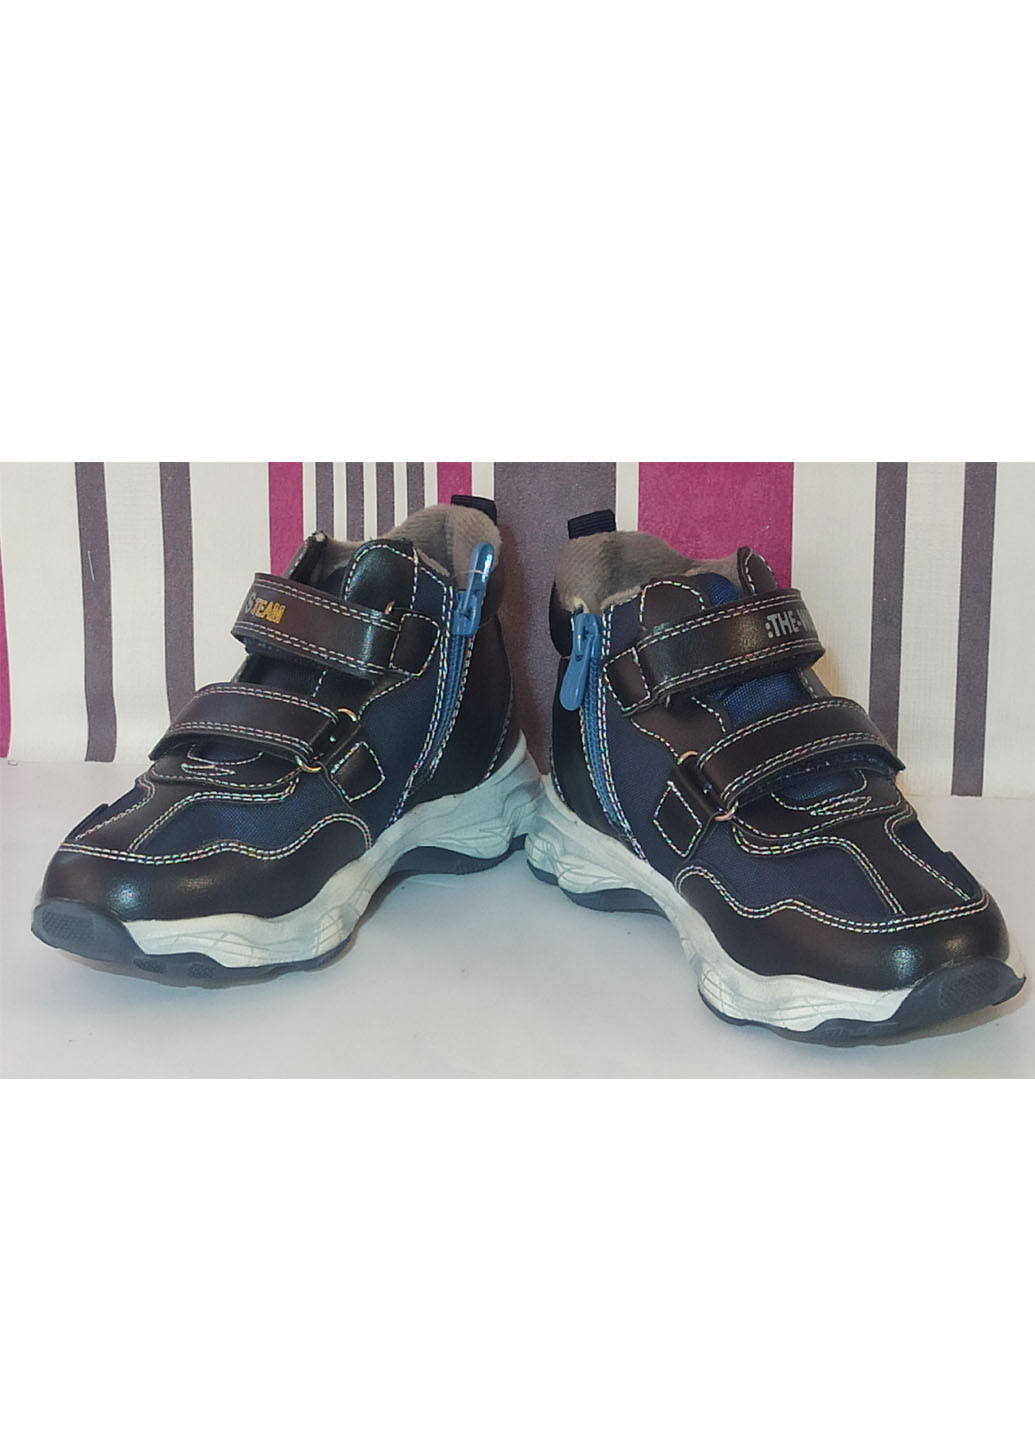 Темно-синие повседневные осенние детские демисезонные ботинки для мальчика утепленные на флисе 5975 р.32-20,5см Weestep